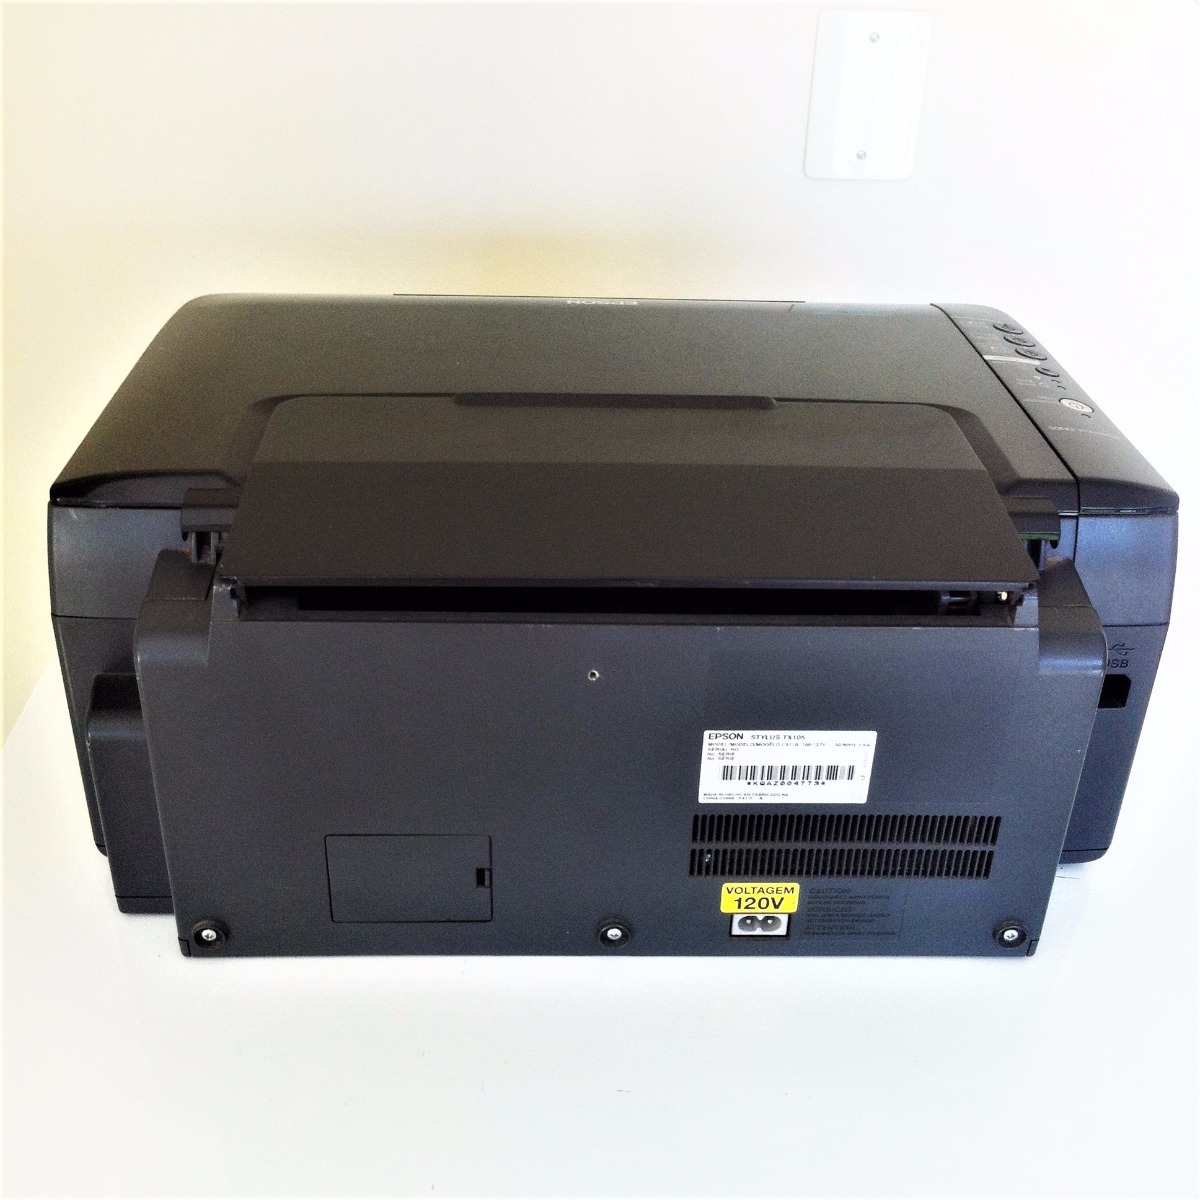 Impressora Scanner Multifuncional Epson  Tx 105  R 170 00 